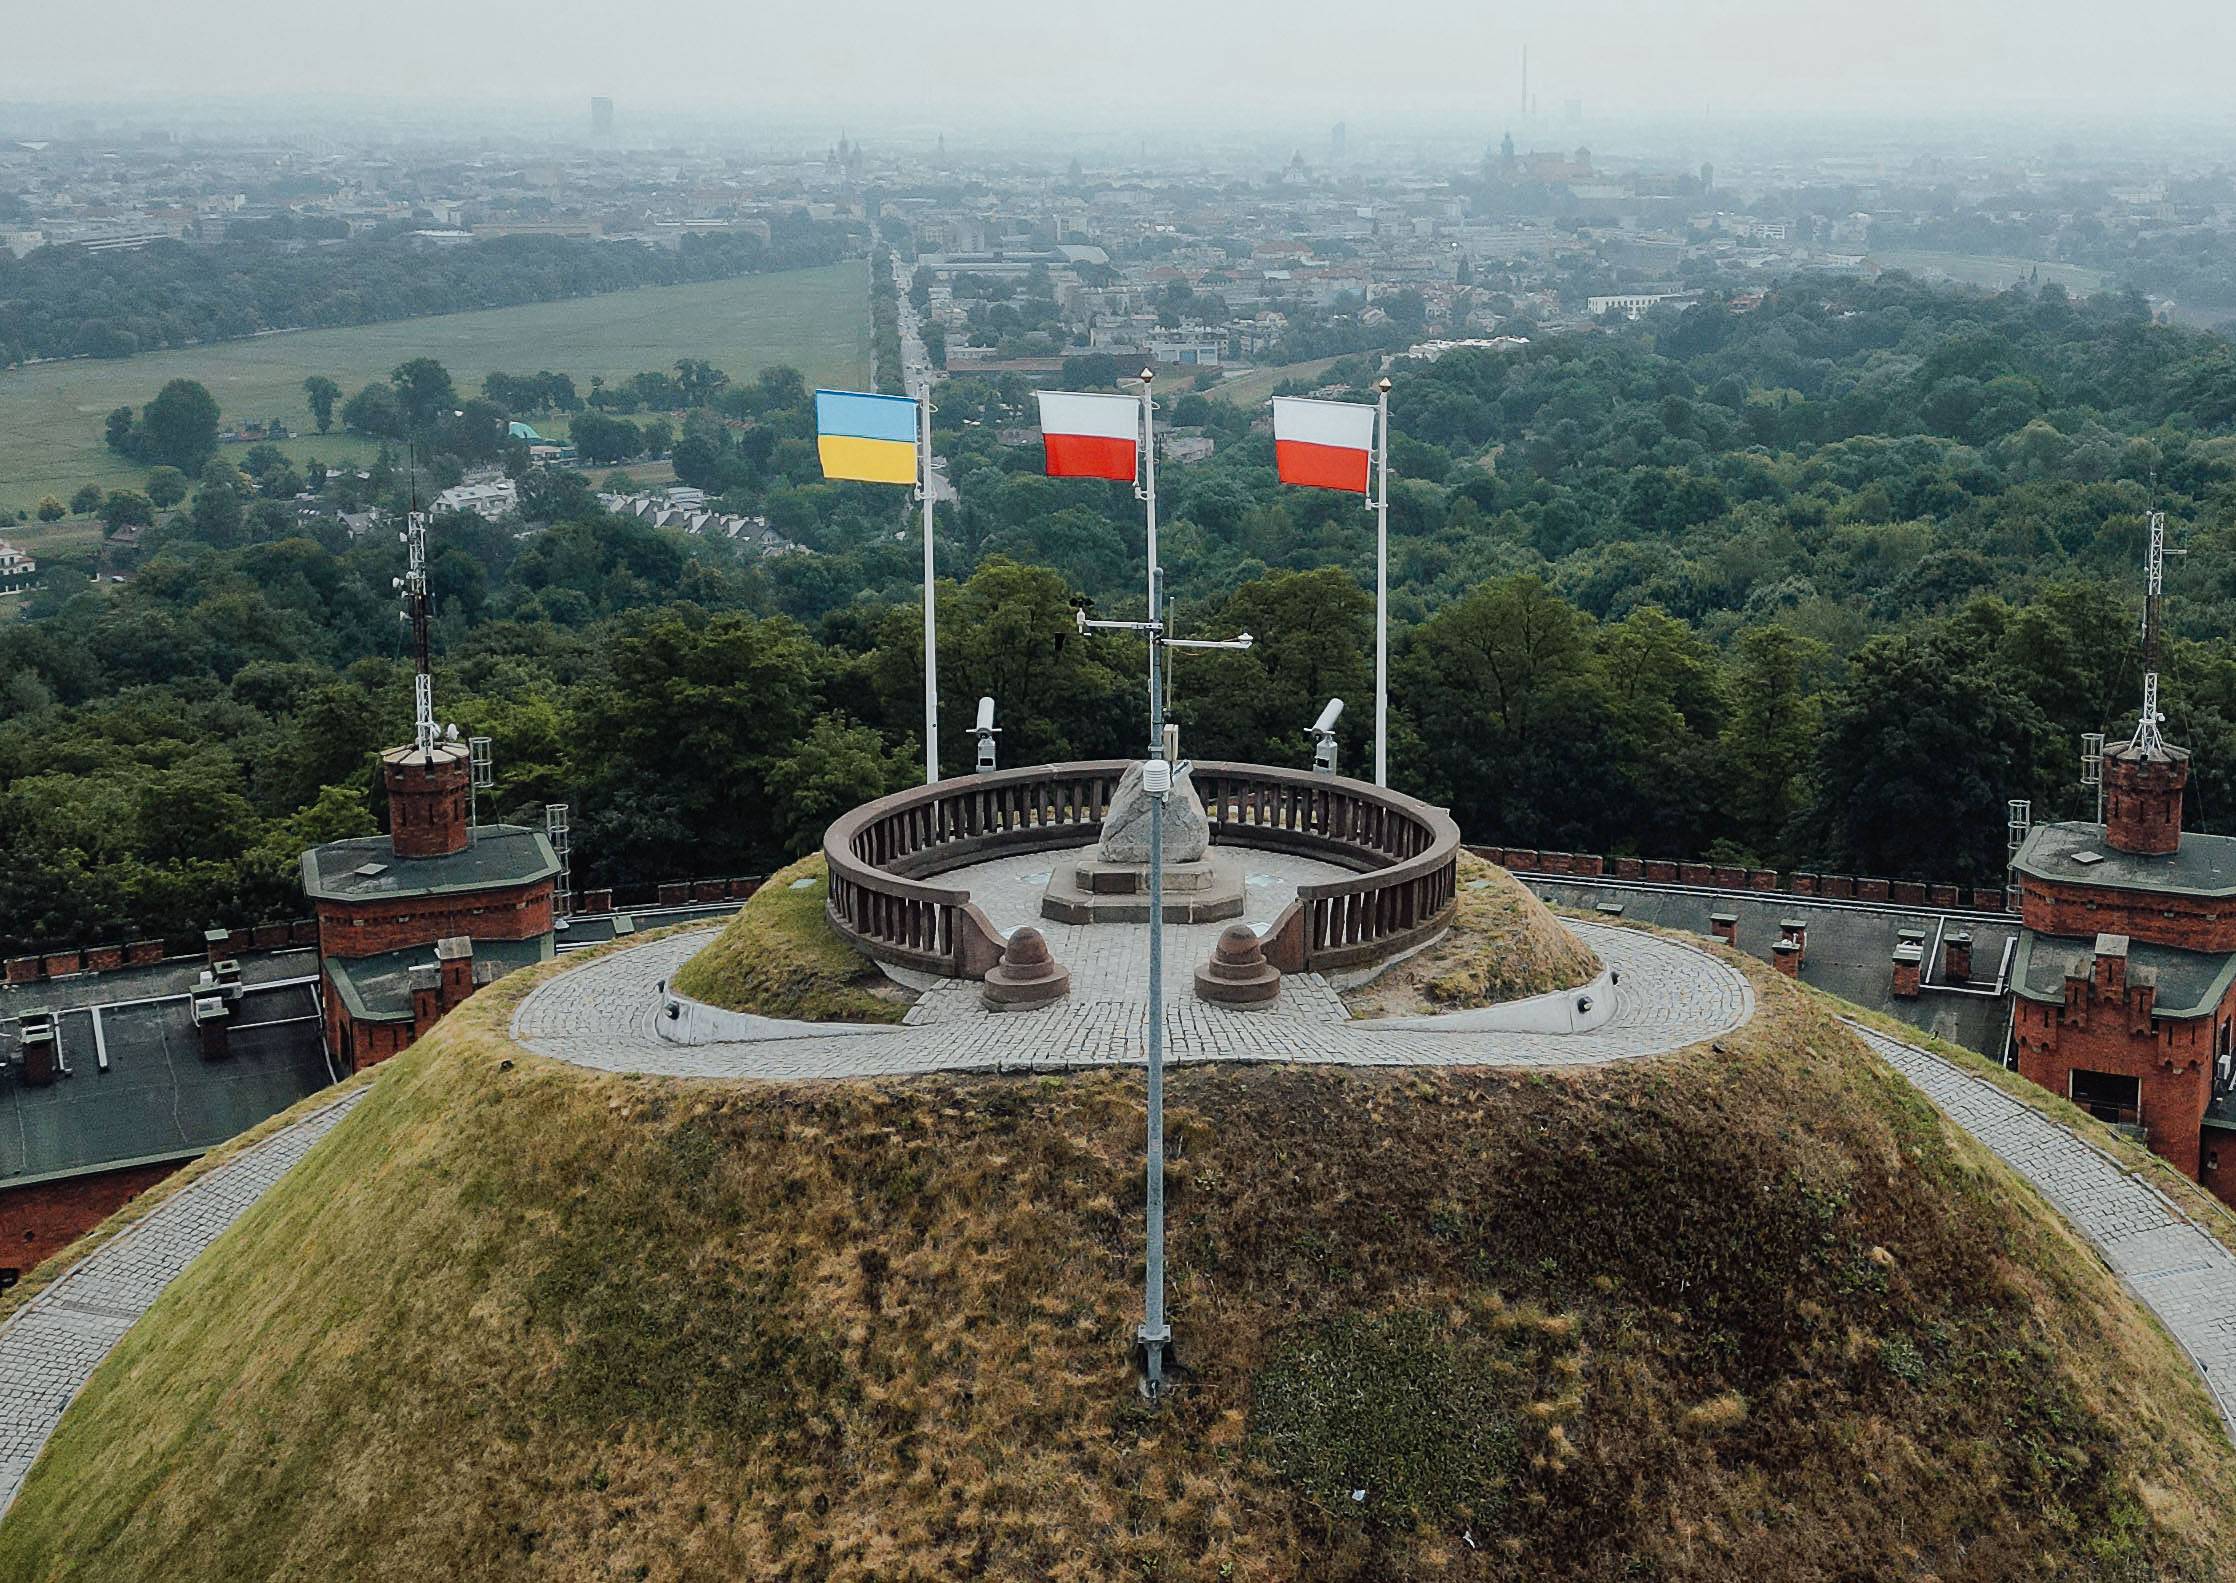 Trzy flagi: jedna ukraińska i dwie polskie, powiewają na masztach na Kopcu Kościuszki w Krakowie